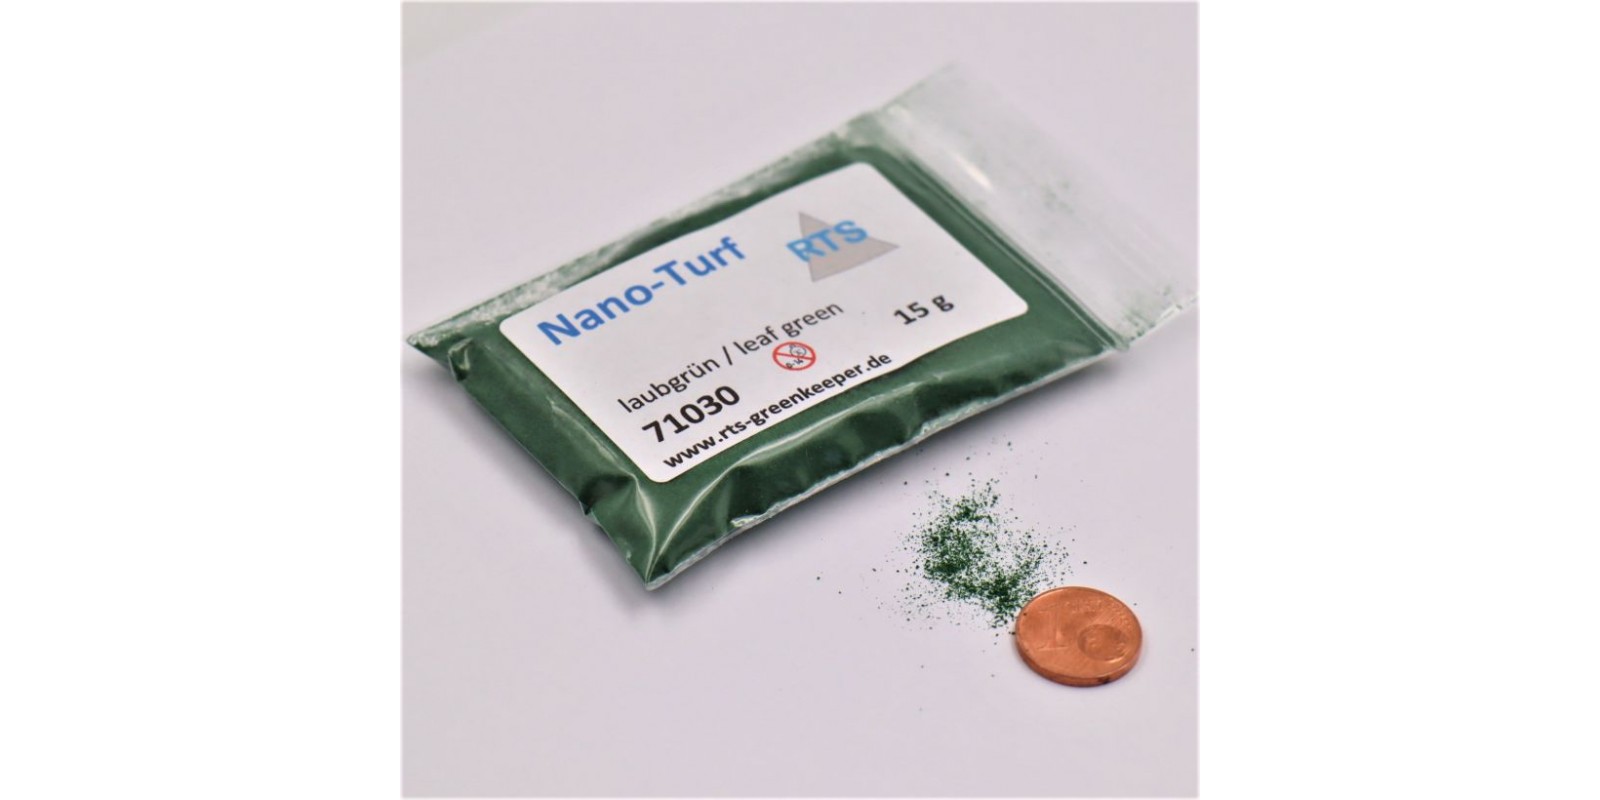 RTS71030 Nano Turf – leaf green